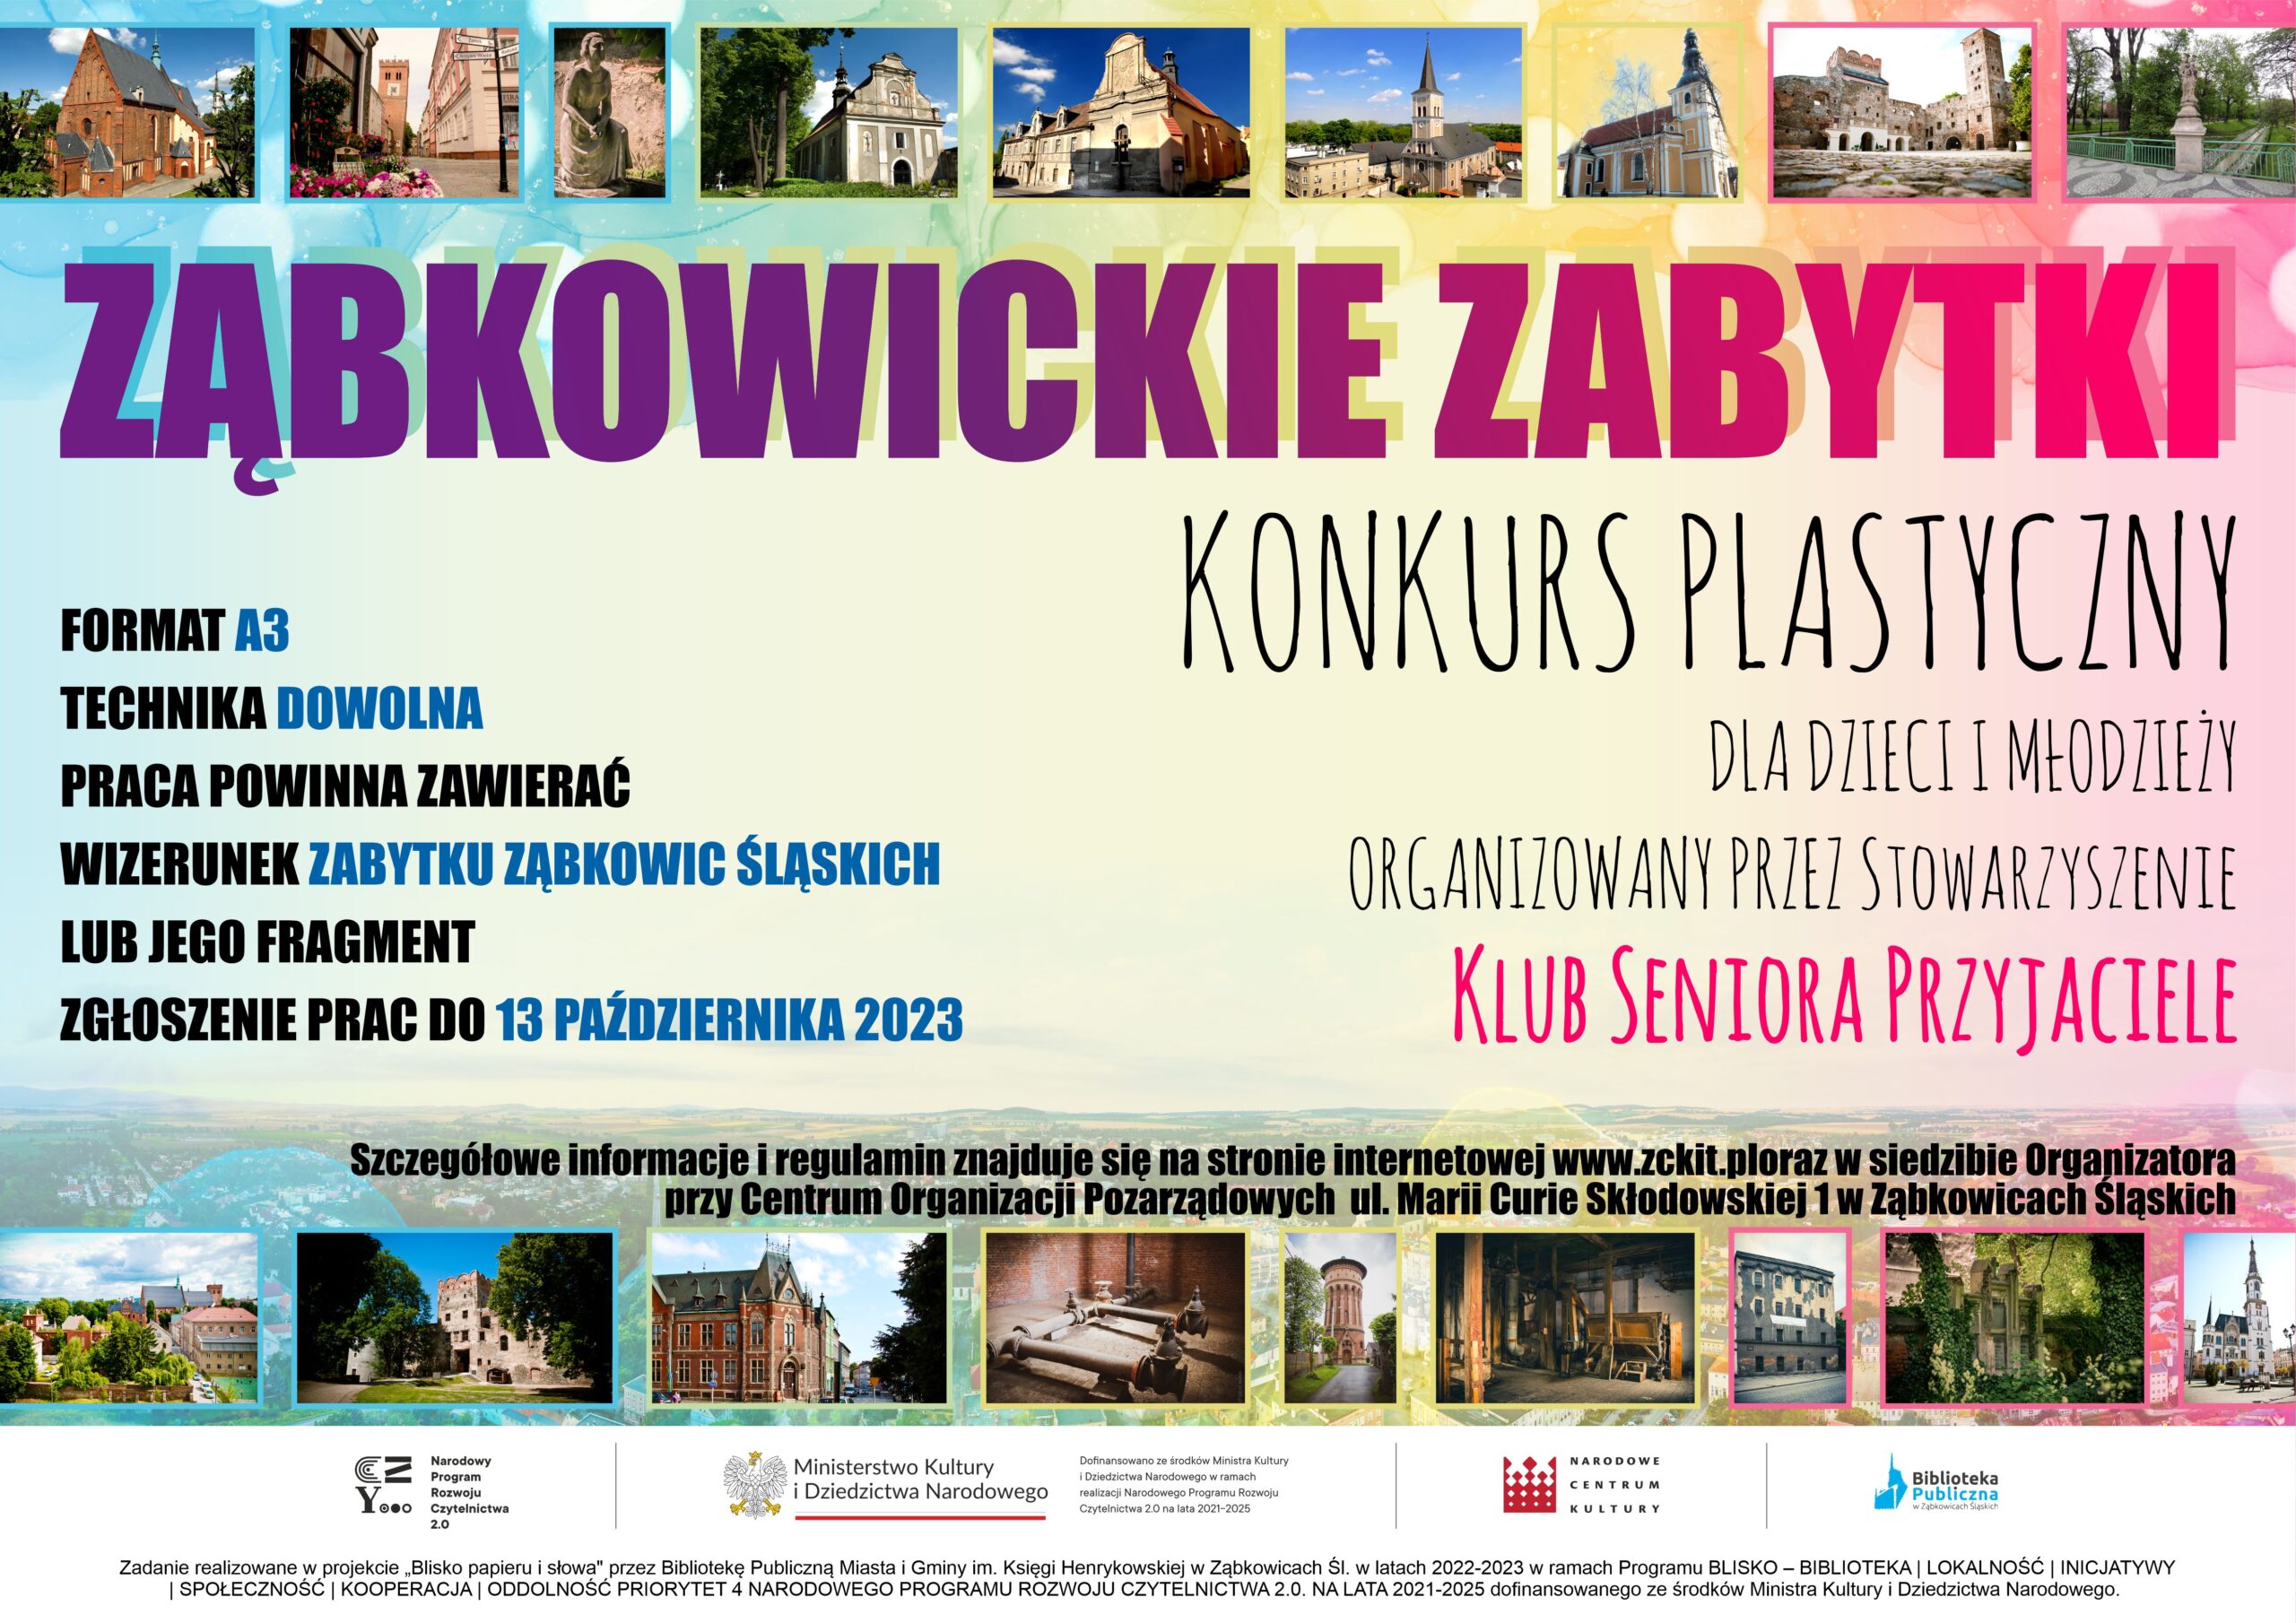 Plakat informujący o konkursie plastycznym "Ząbkowickie zabytki" organizowanym przez Klub Seniora Przyjaciele. Na plakacie znajdują się zdjęcia zabytków na terenie Ząbkowic Śląskich.